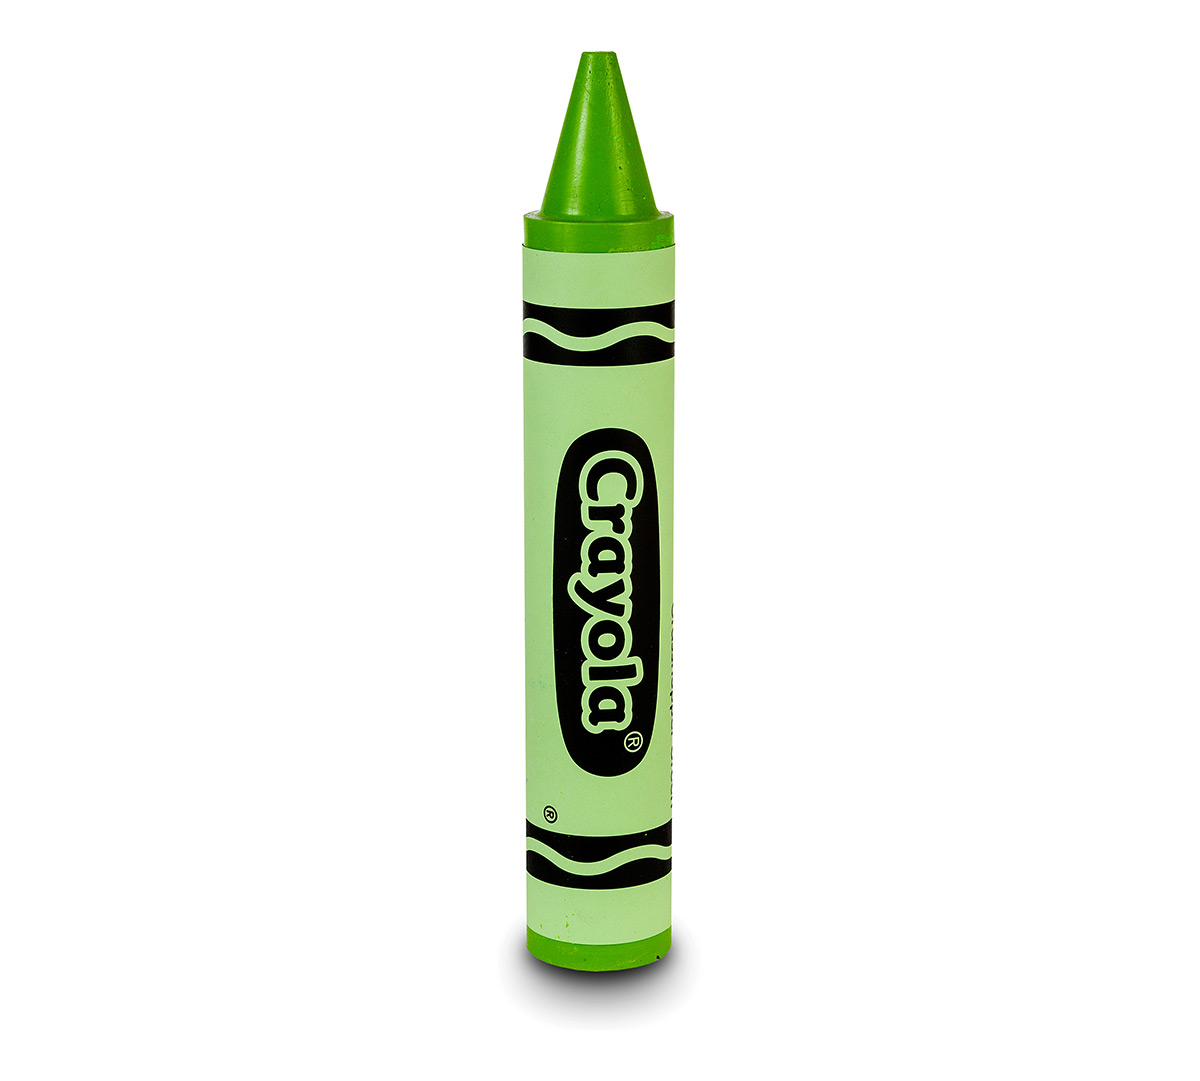 Giant Crayola Crayon - Grasshopper Green | Crayola